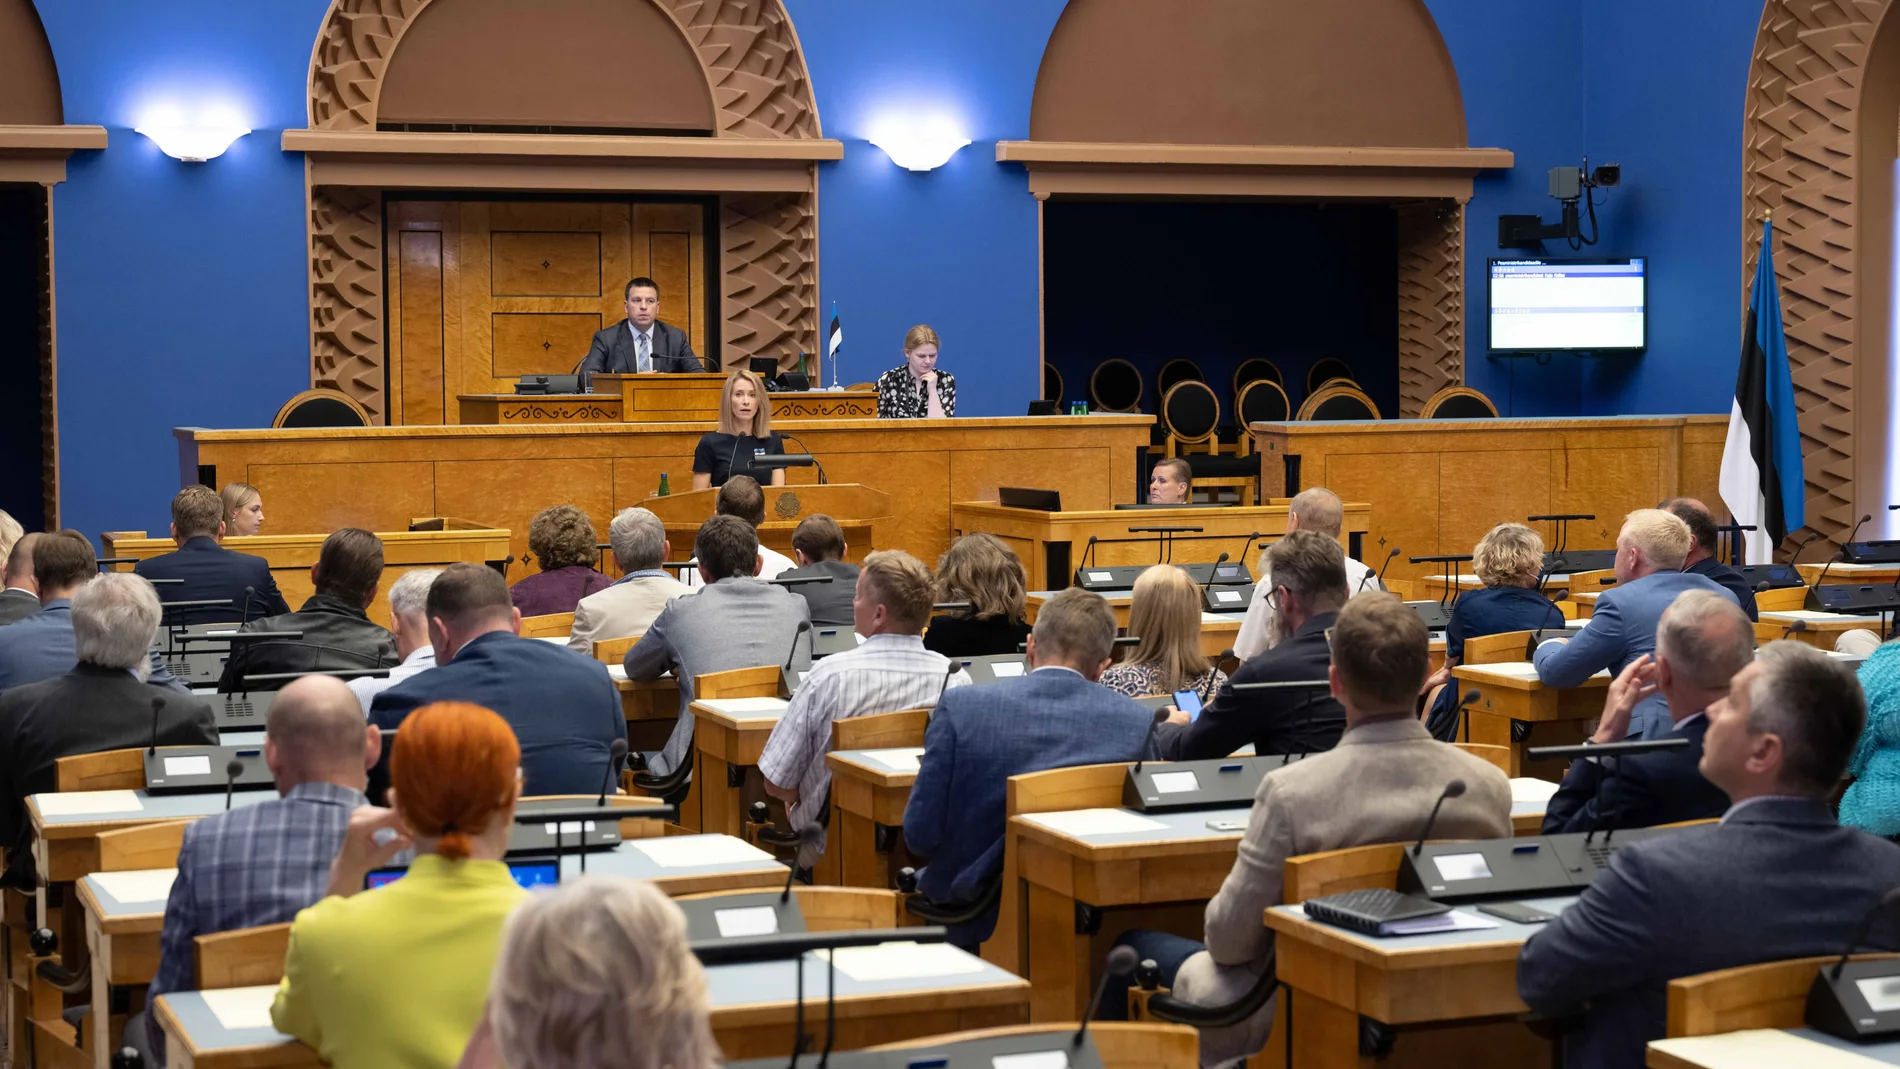 Sesión del "Riigikogu" (Parlamento de Estonia)